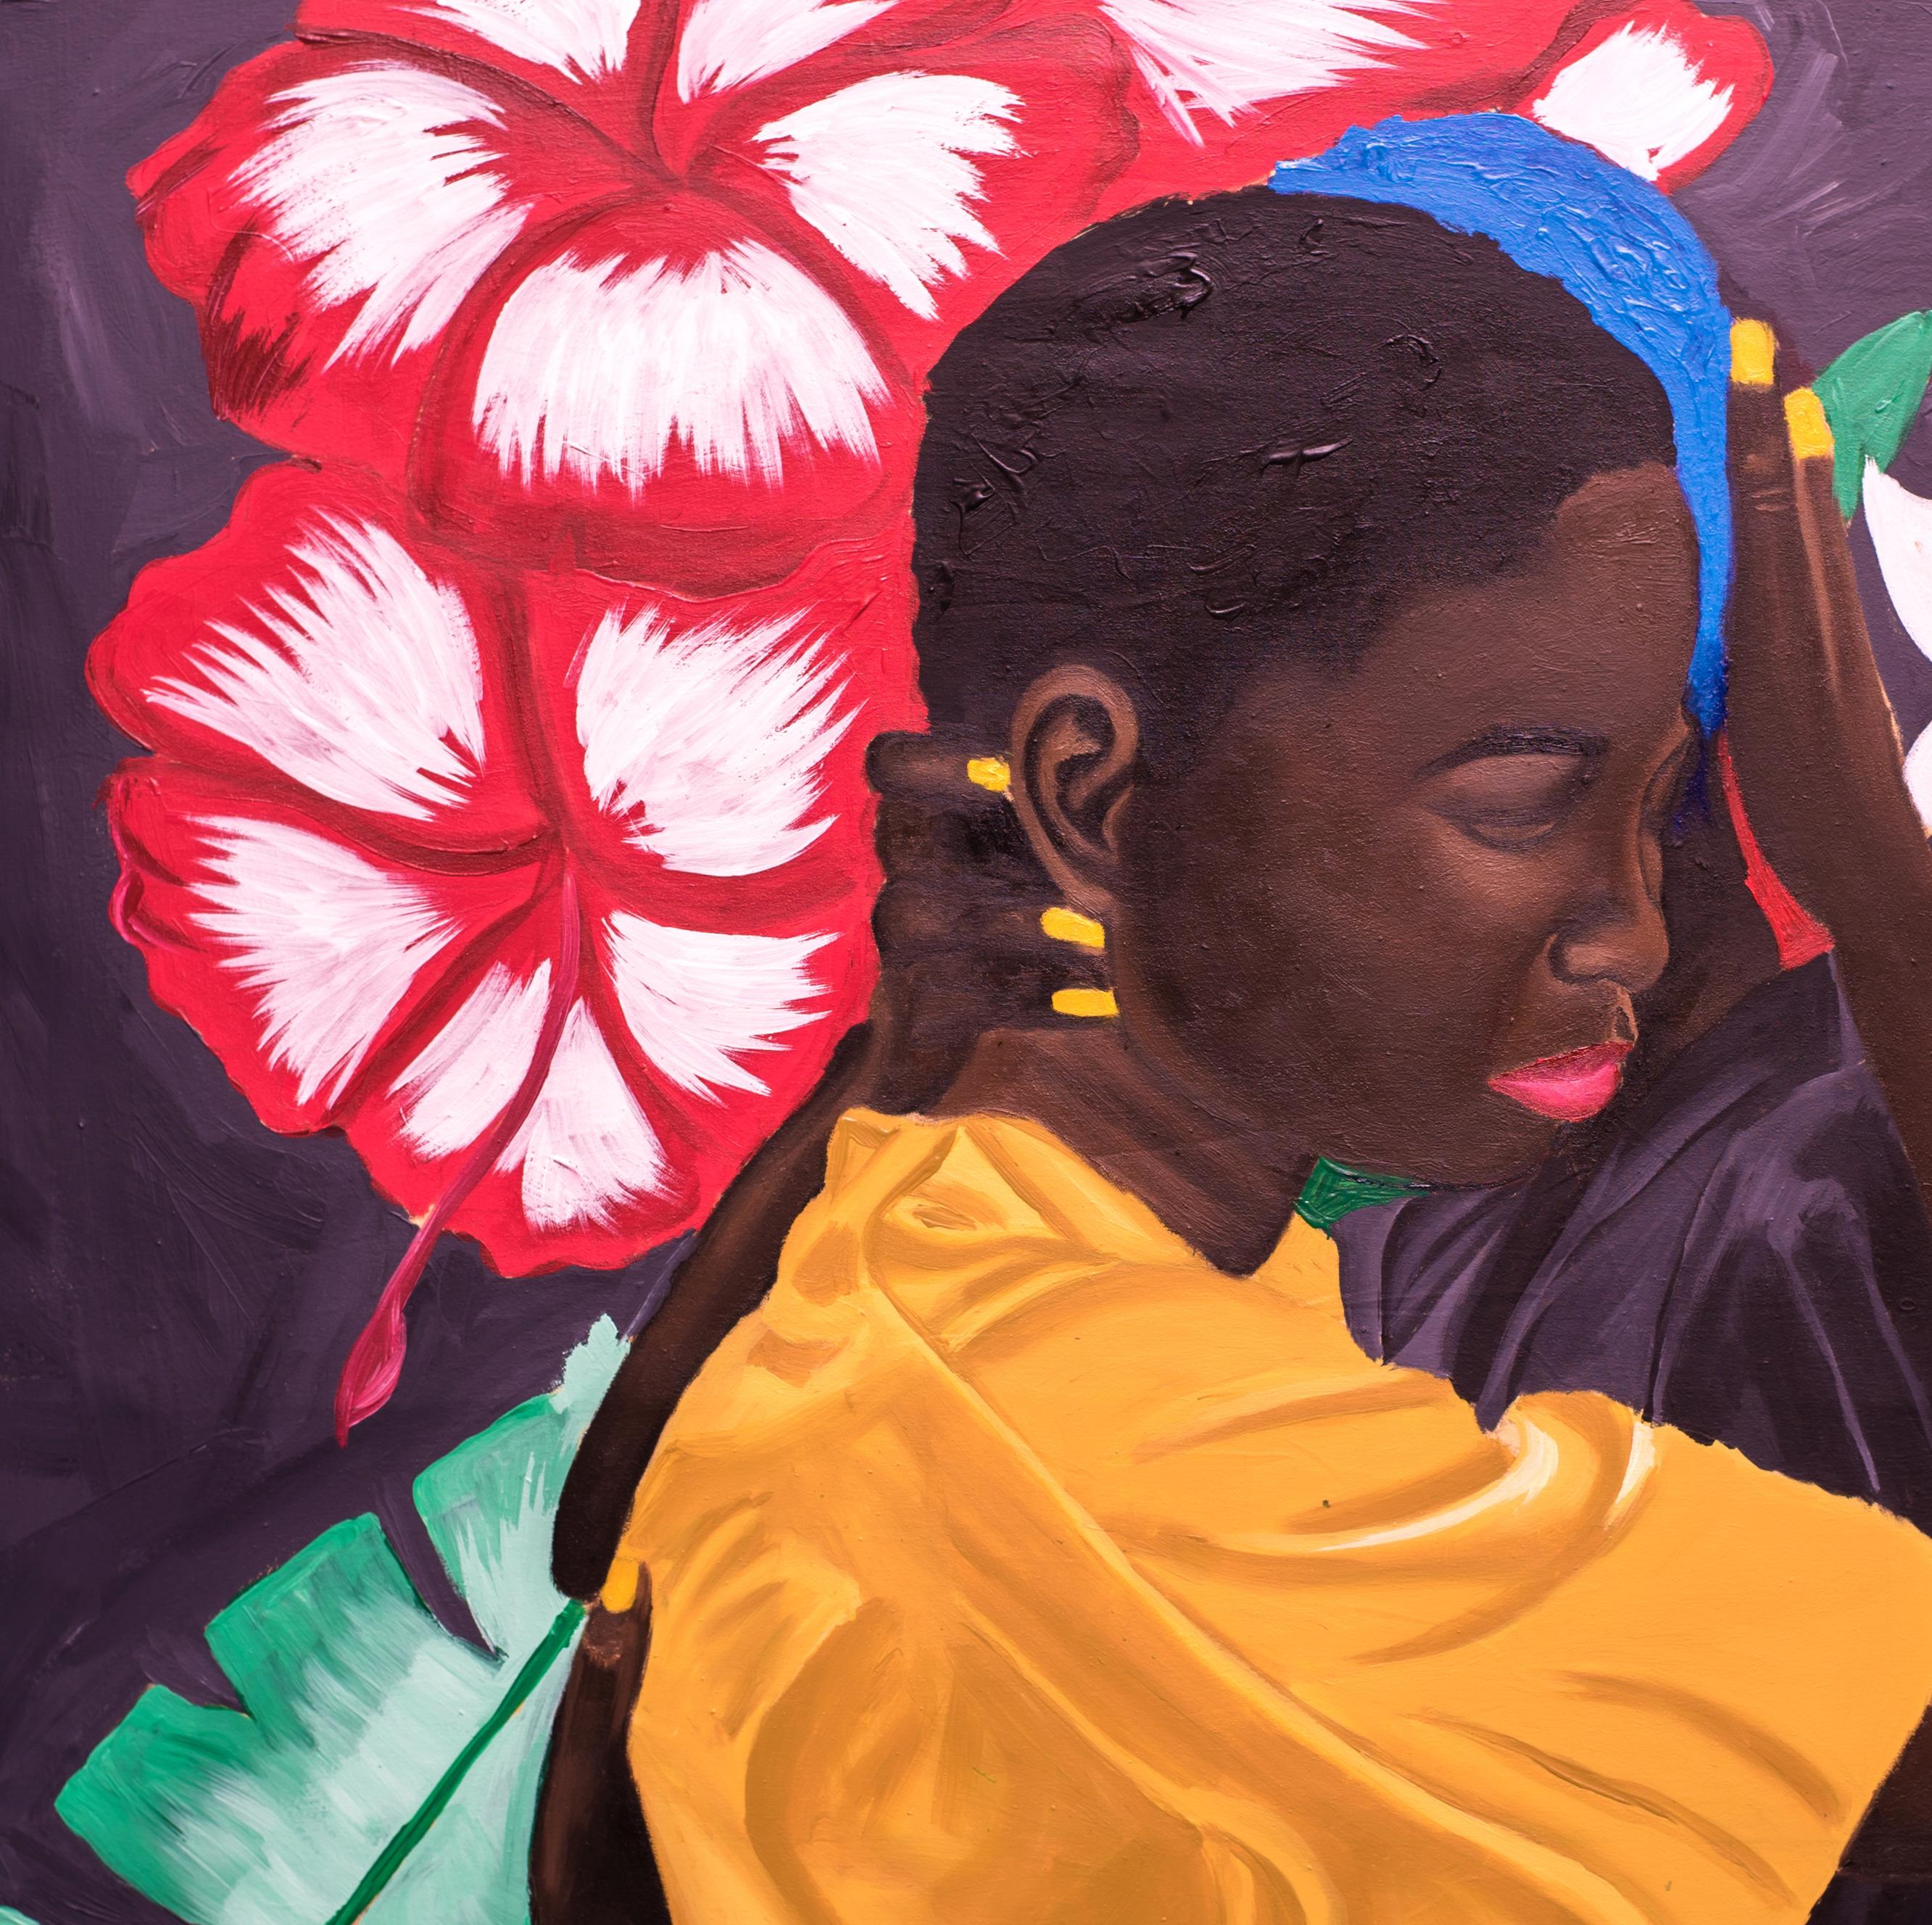 Halten Sie mich in dieser schwierigen Zeit fest – Painting von Olaosun Oluwapelumi